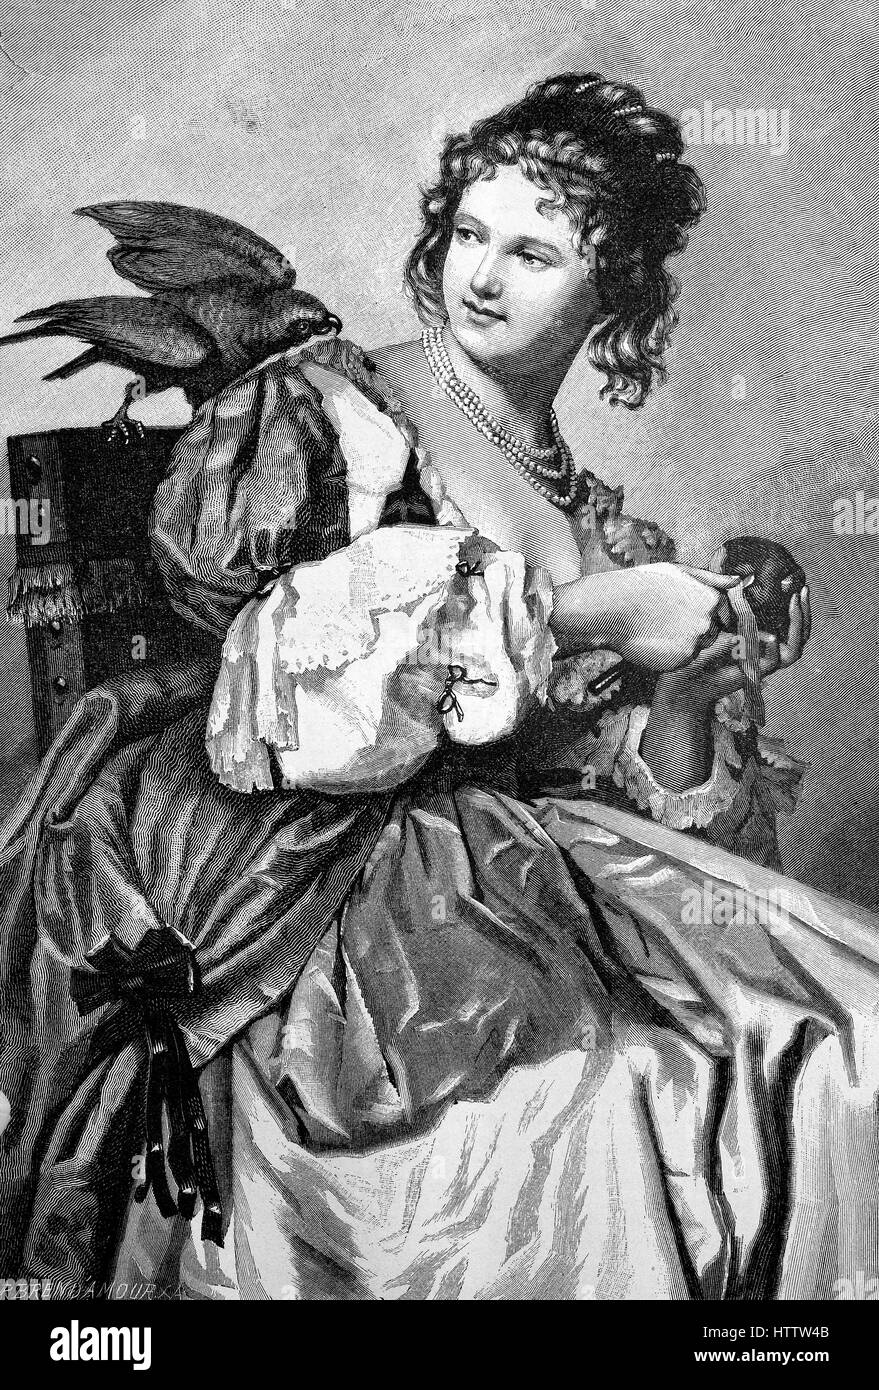 La photo est ce que voulez-vous ?, fille avec une pomme et un oiseau ressemble curieusement au-dessus de l'épaule, après sa peinture sur bois dessiné par Jul. Mante, l'Allemagne, la reproduction d'une gravure sur bois à partir de 1882, l'amélioration numérique Banque D'Images